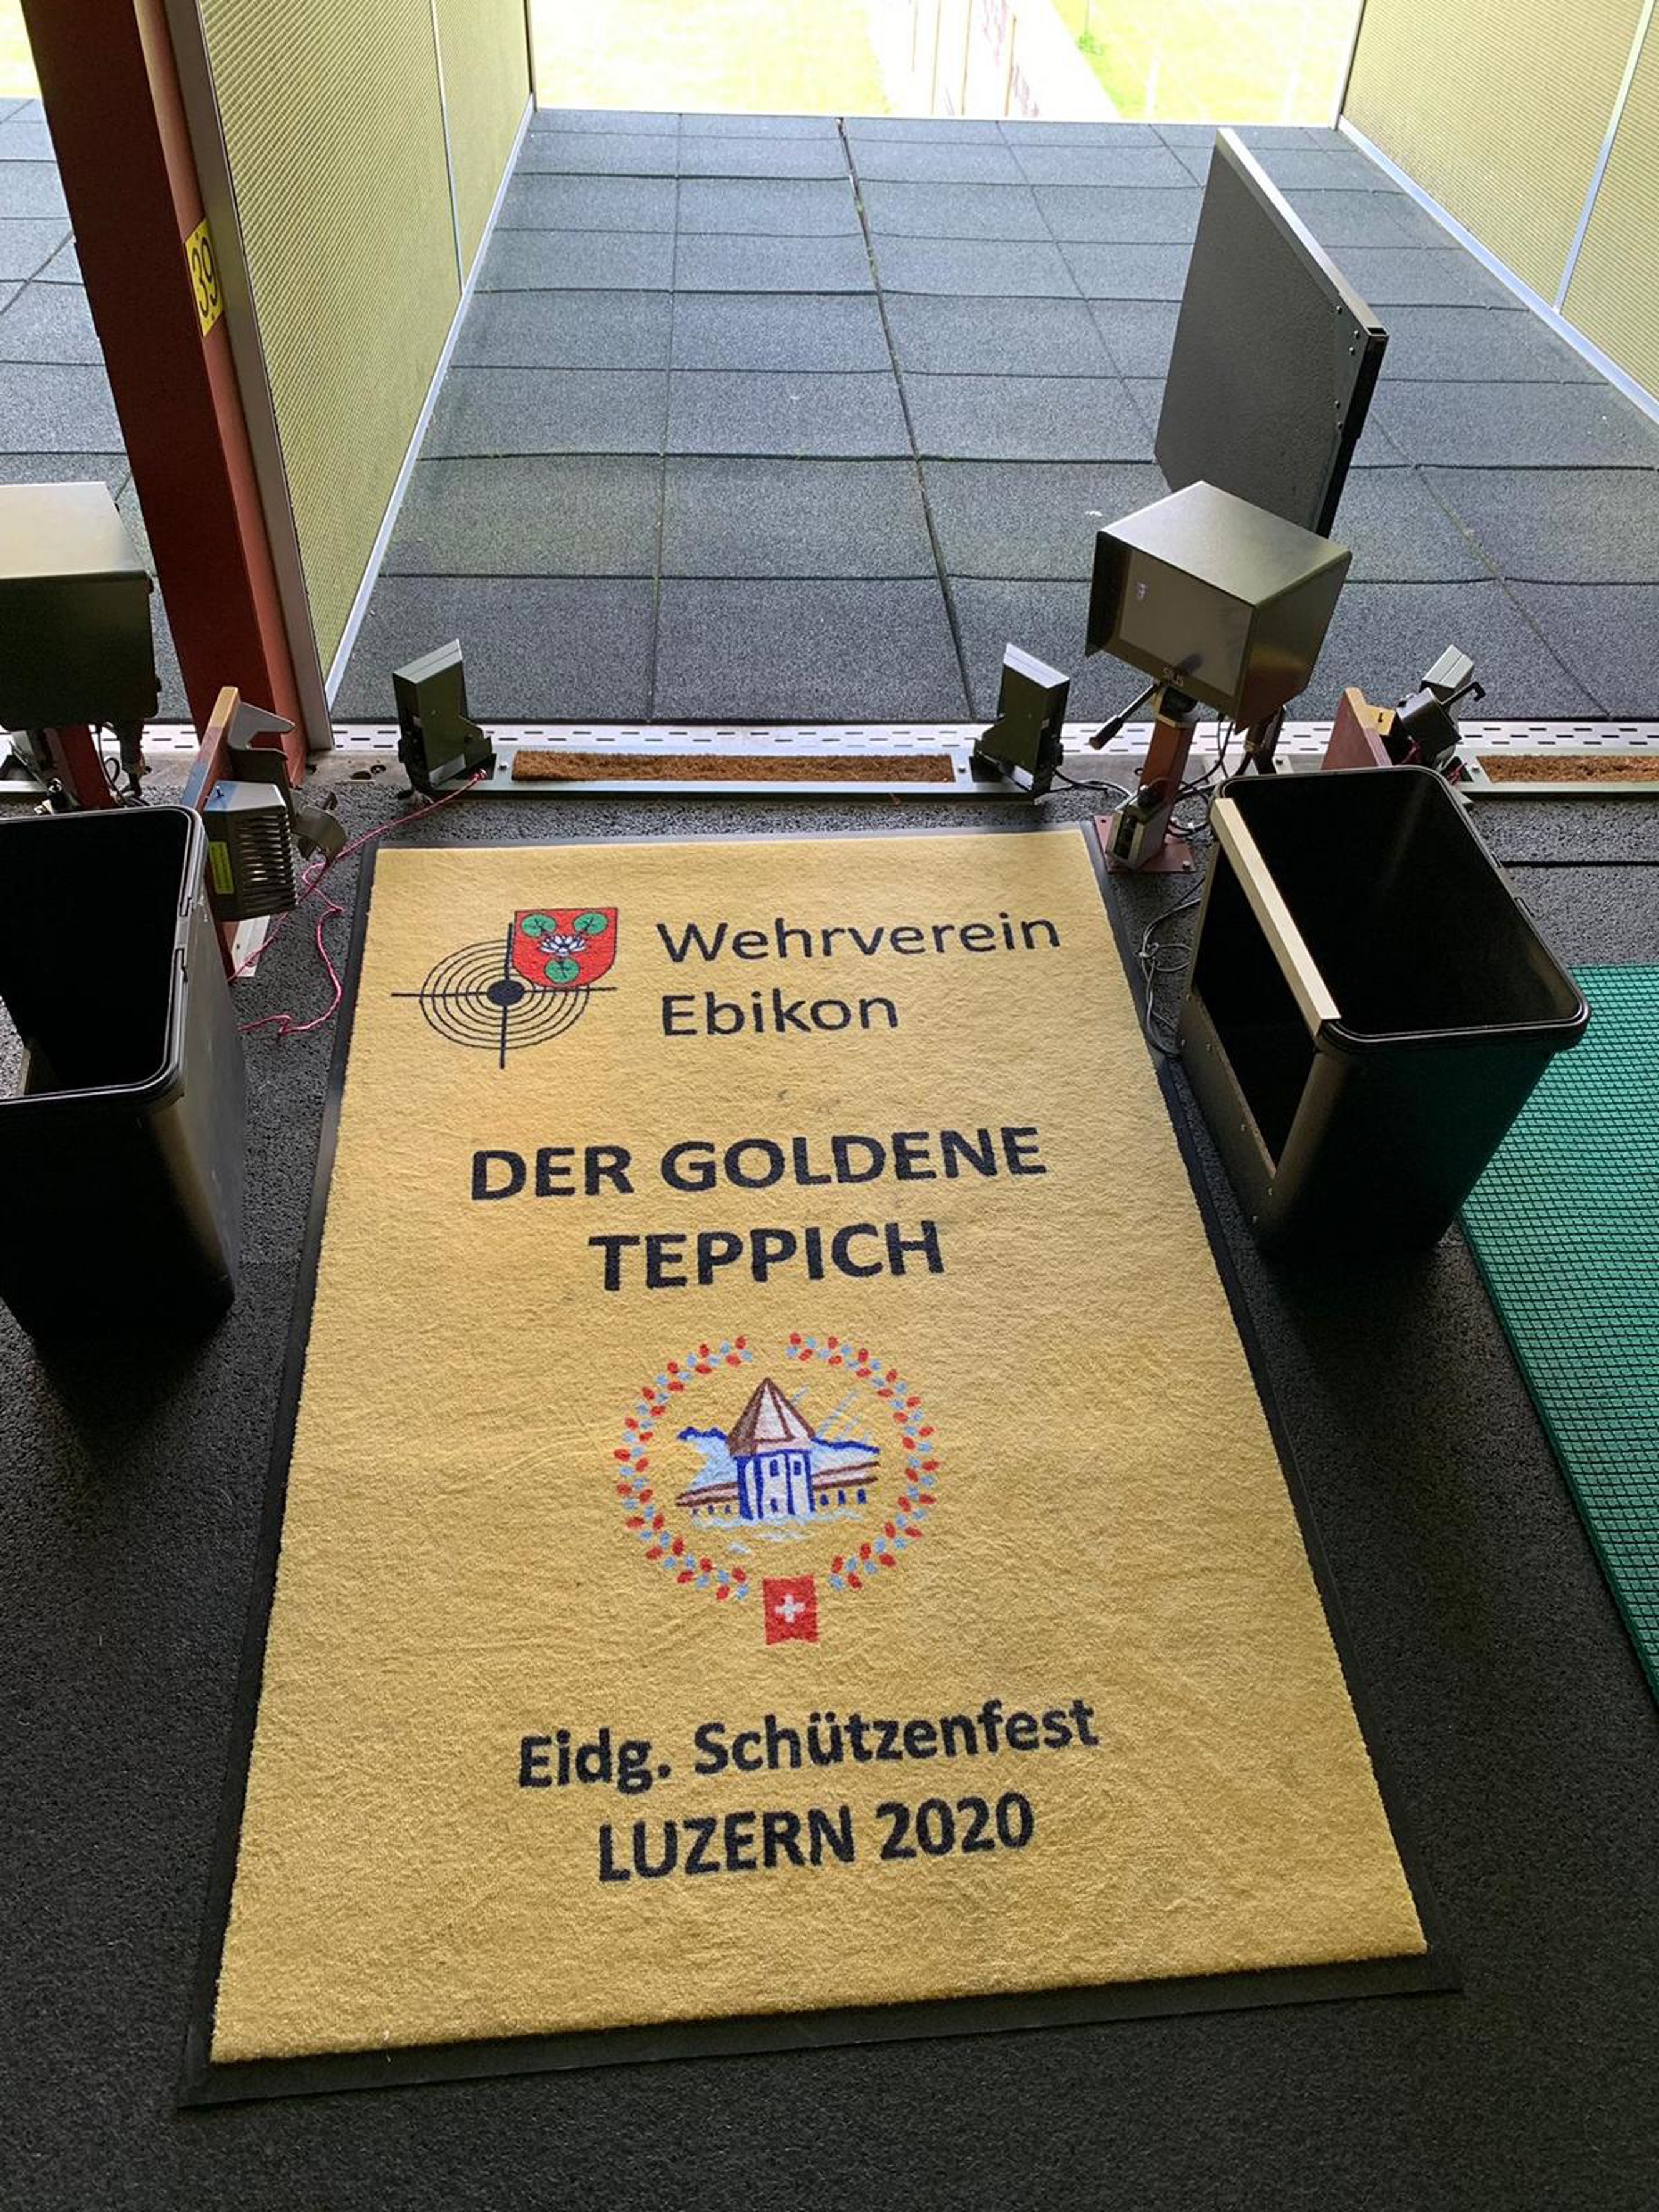 Der goldene Teppich des Wehrvereins Ebikon dient im Schiessstand Hüslenmoos in Emmen als Unterlage beim Liegendschiessen. Der Verein zeigt damit, dass er lebt und wünscht allen Schützinnen und Schützen am Eidgenössischen Schützenfest 2020 in Luzern «Guet Schuss».